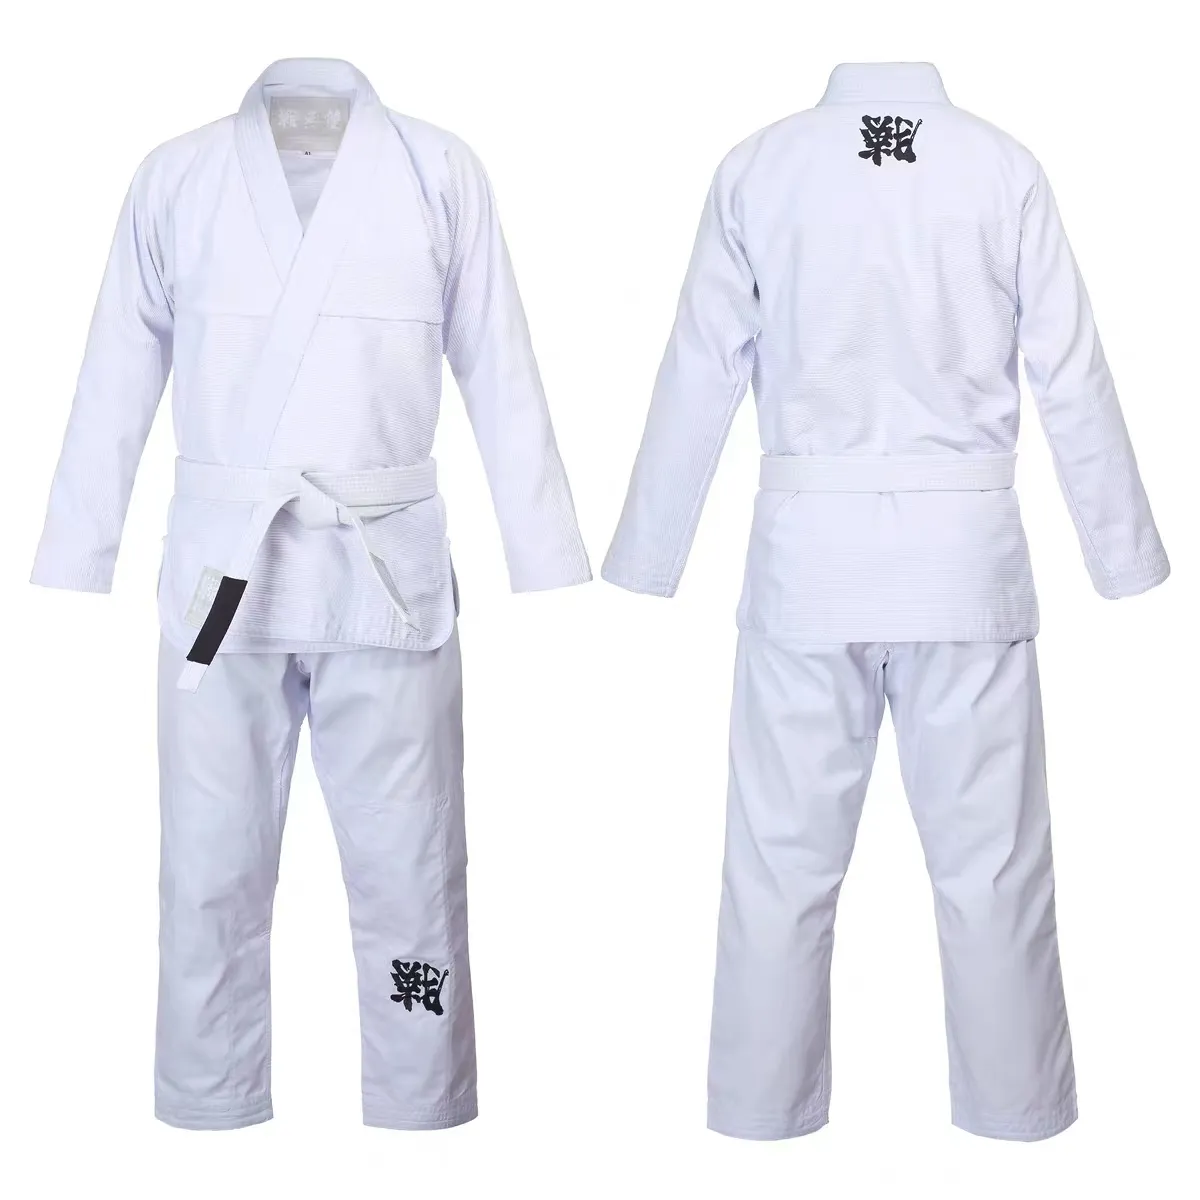 Judo Uniform Judo Kimono Judo Gi Brazilian Jiu Jitsu Gi with Breathable Fabric, Kimono De Jiu Jitsu for Boxing Short